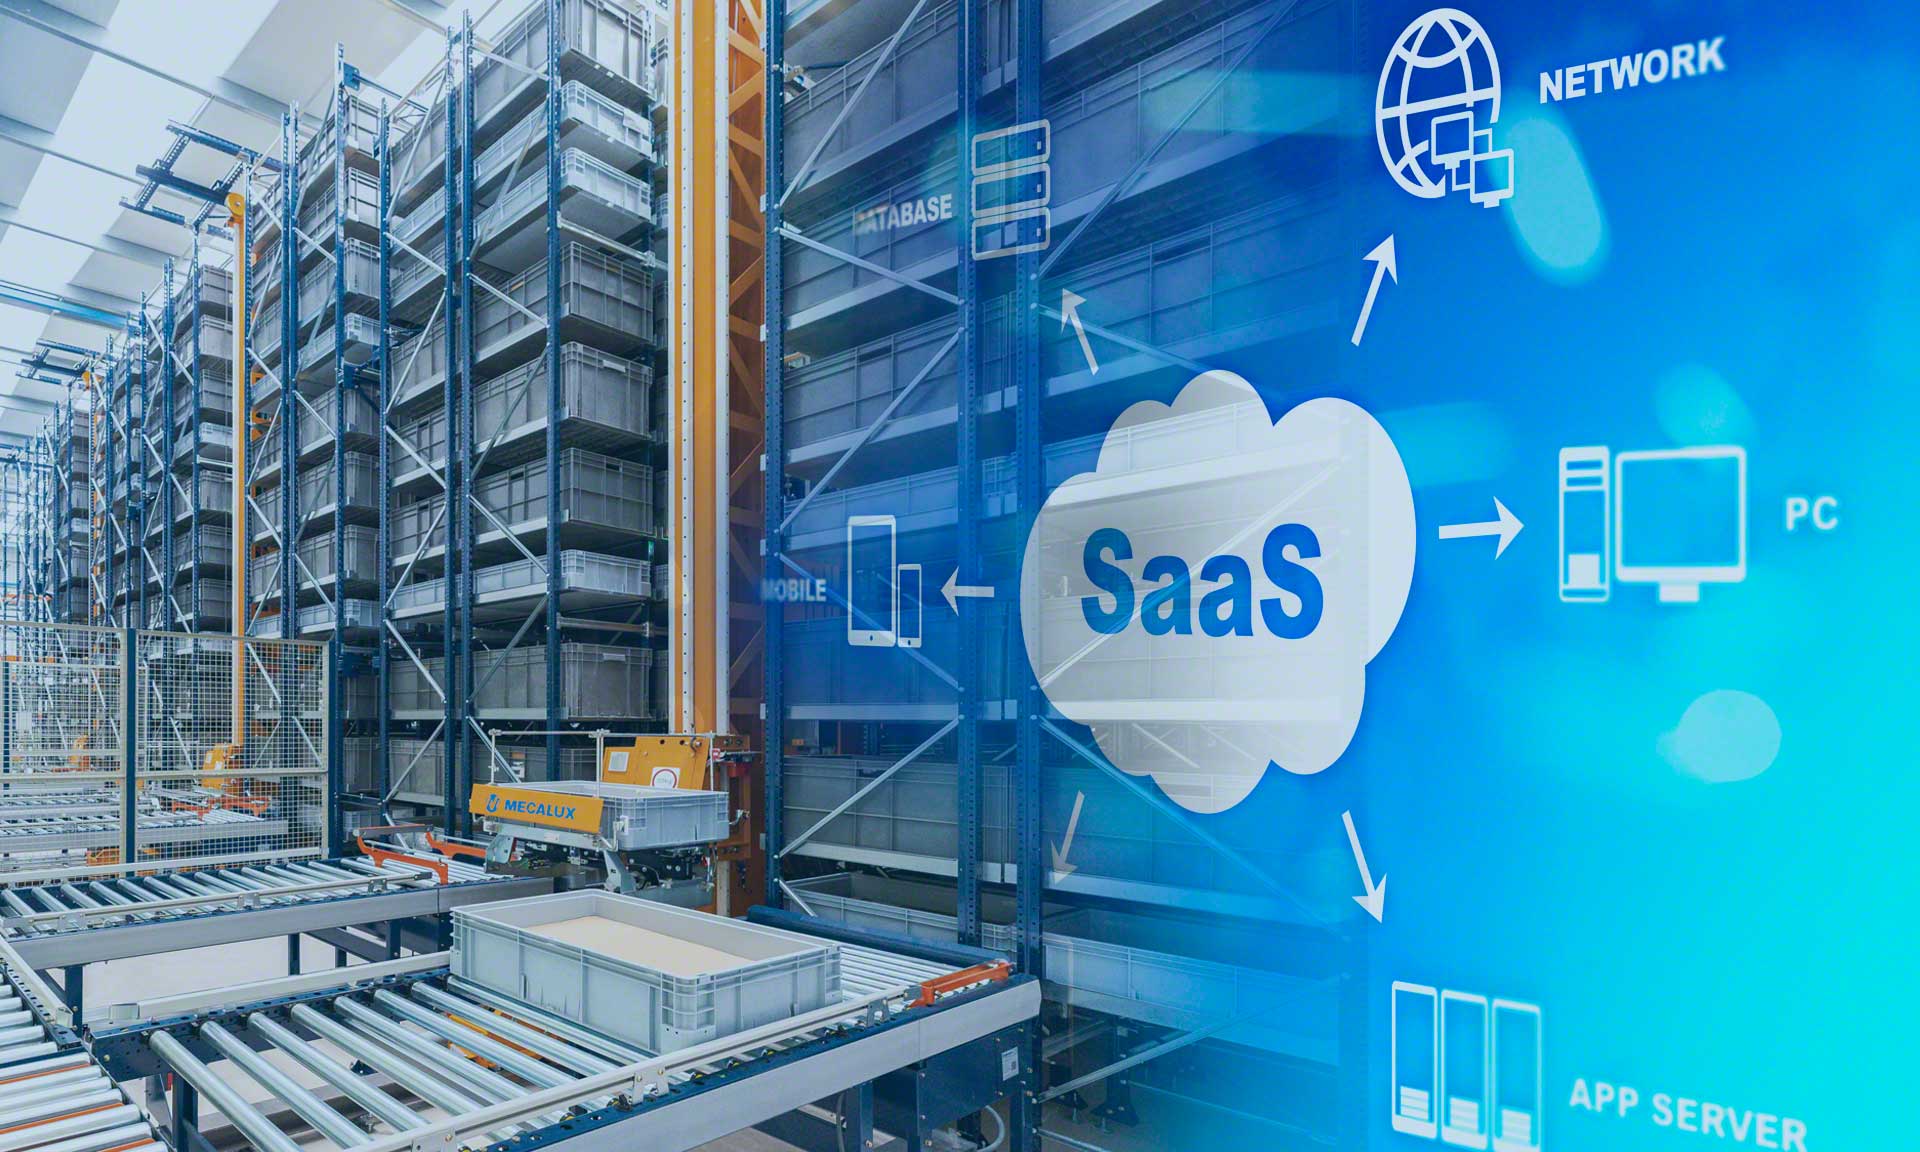 La tecnologia SaaS aiuta l'implementazione di programmi digitali nel magazzino mediante il cloud computing